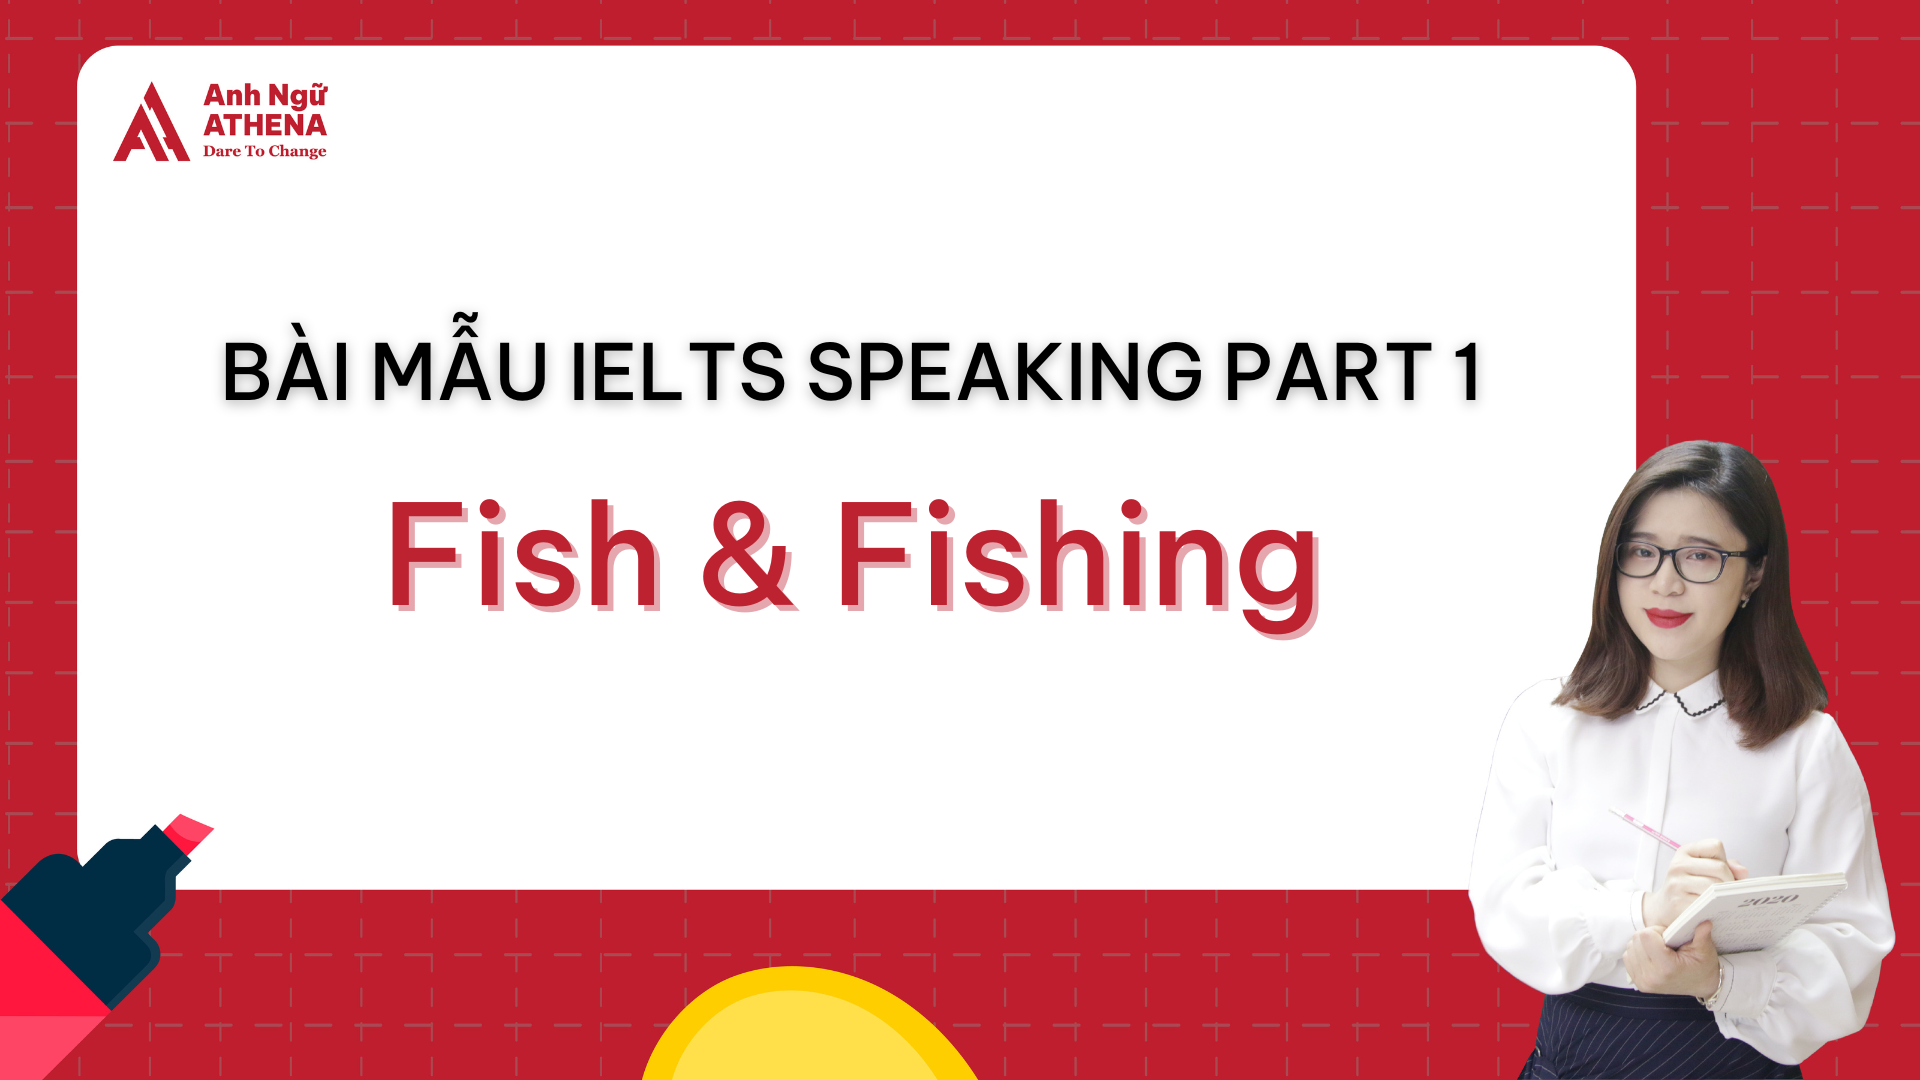 Bài mẫu IELTS Speaking Part 1 - Topic: Fish & Fishing